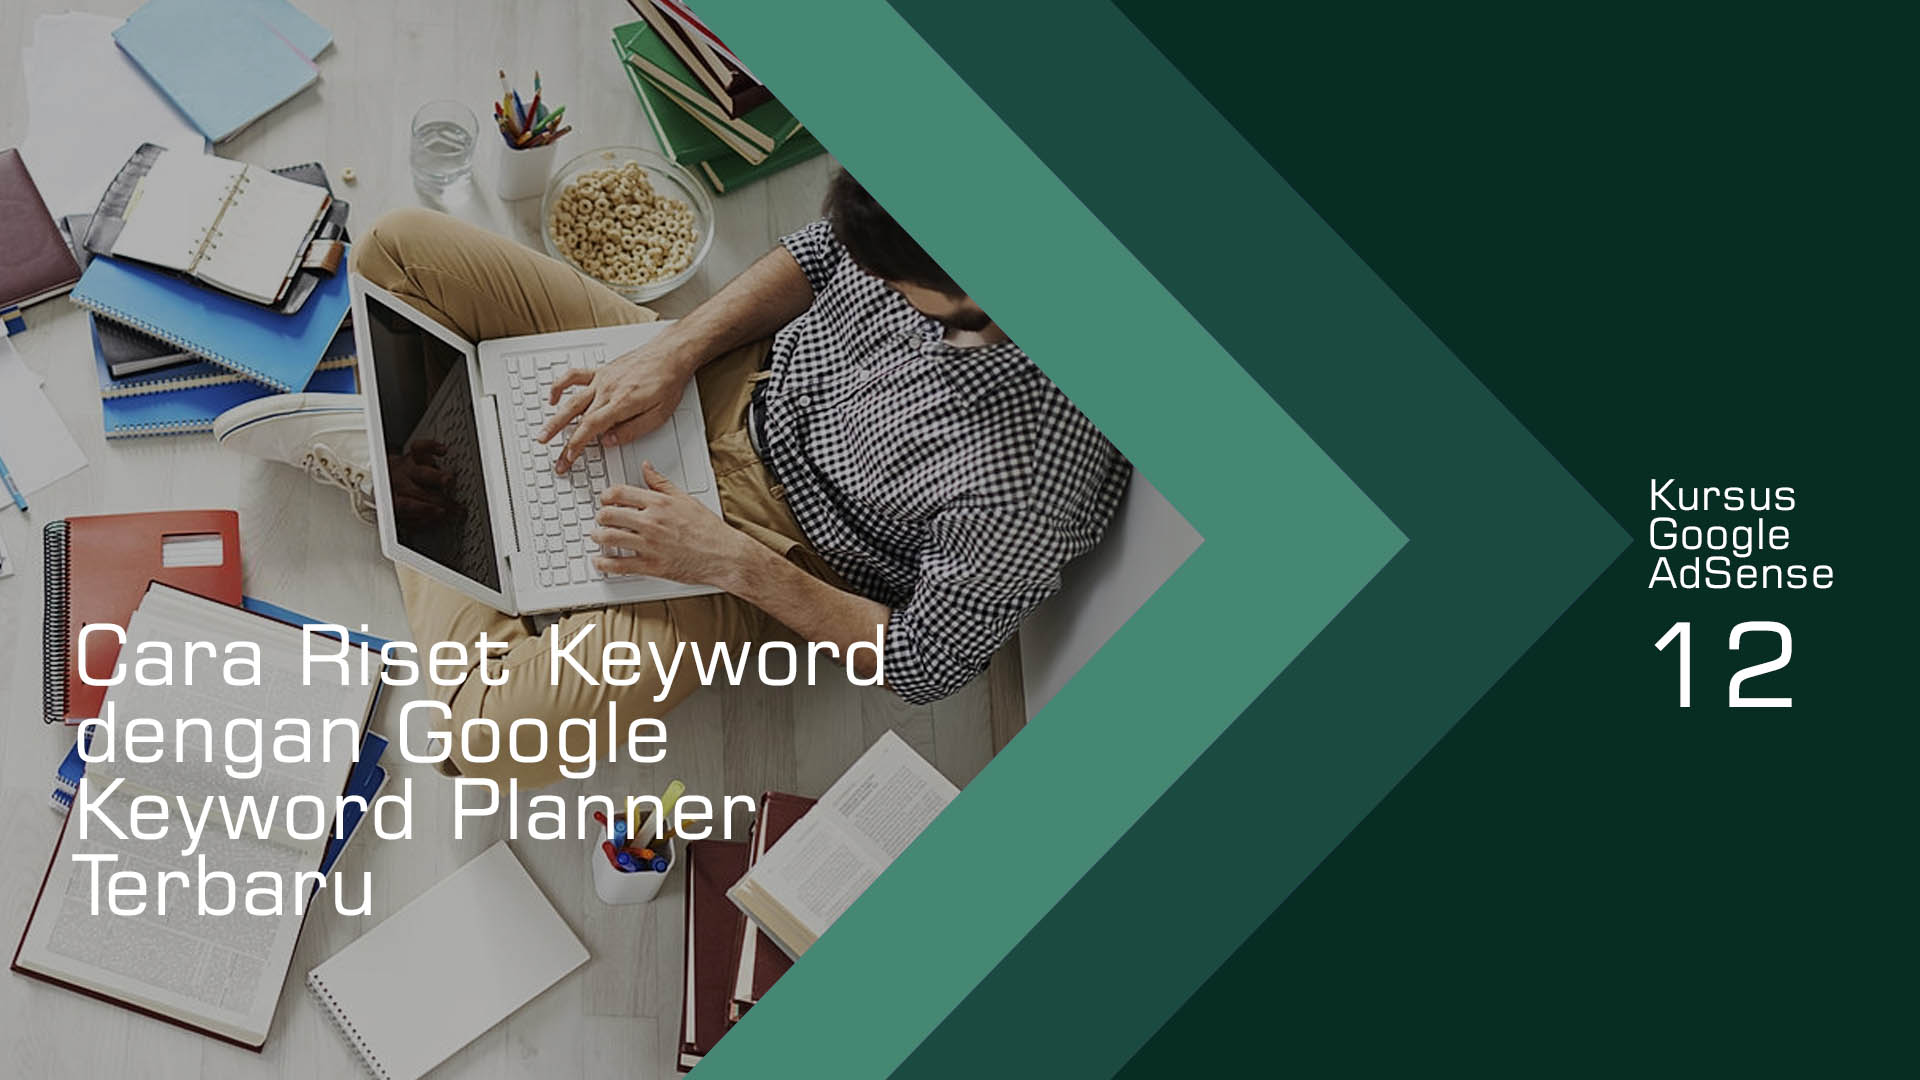 Cara Riset Keyword dengan Google Keyword Planner Terbaru